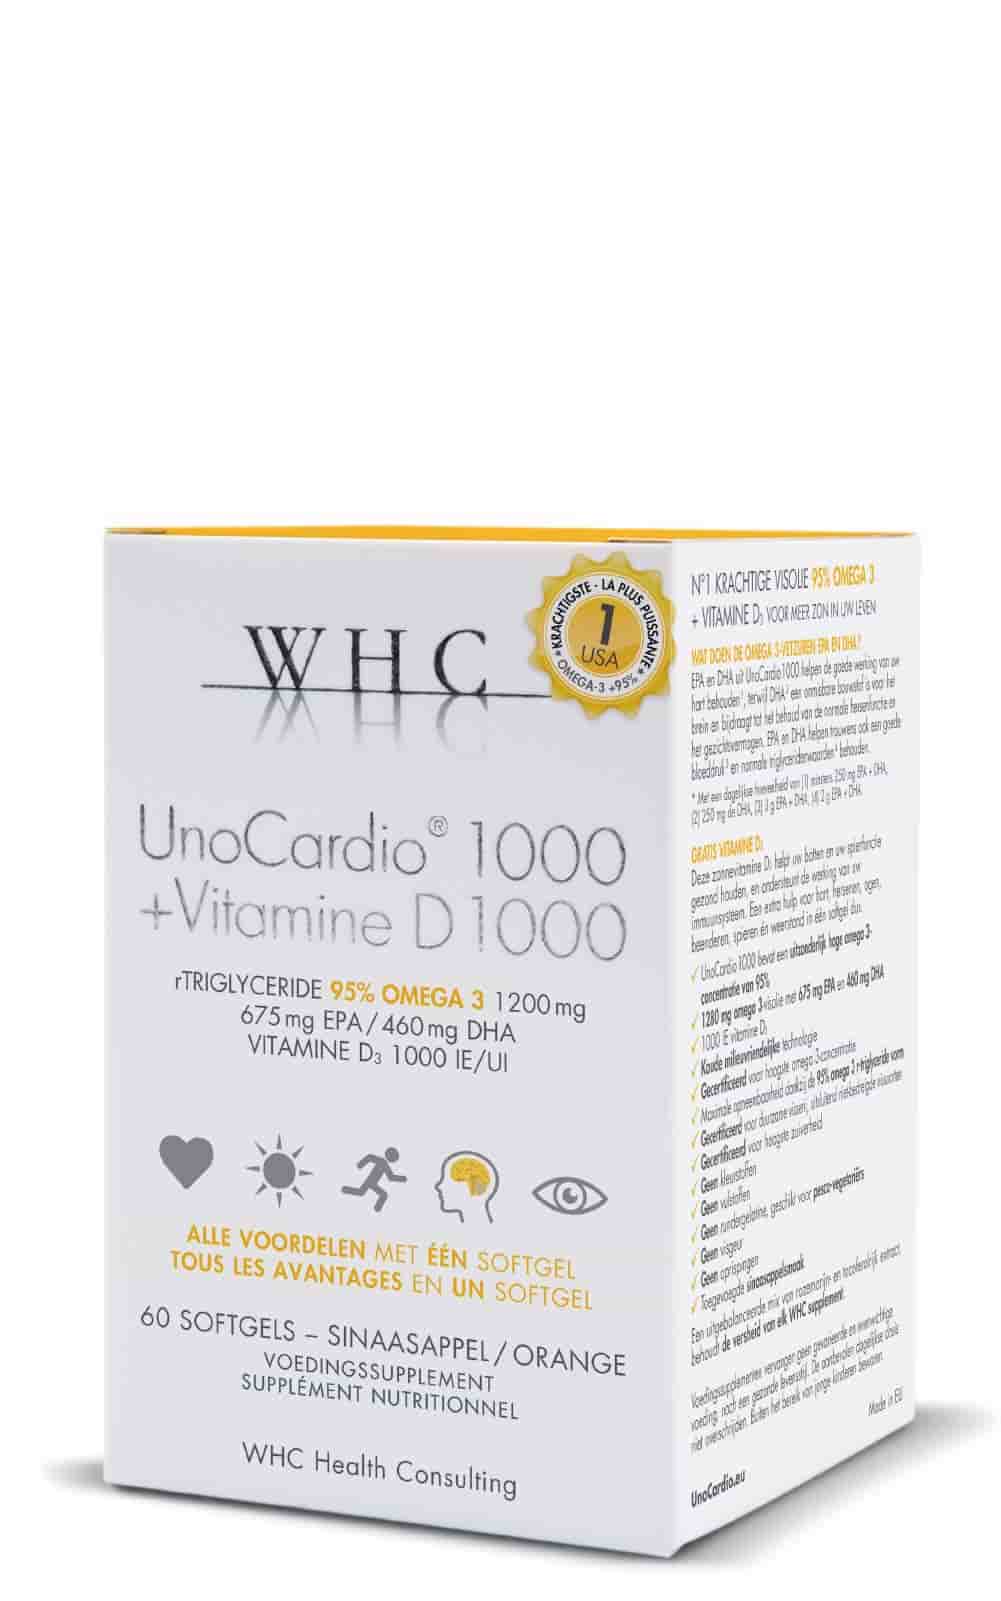 Buy WHC UnoCardio 1000 at LiveHelfi